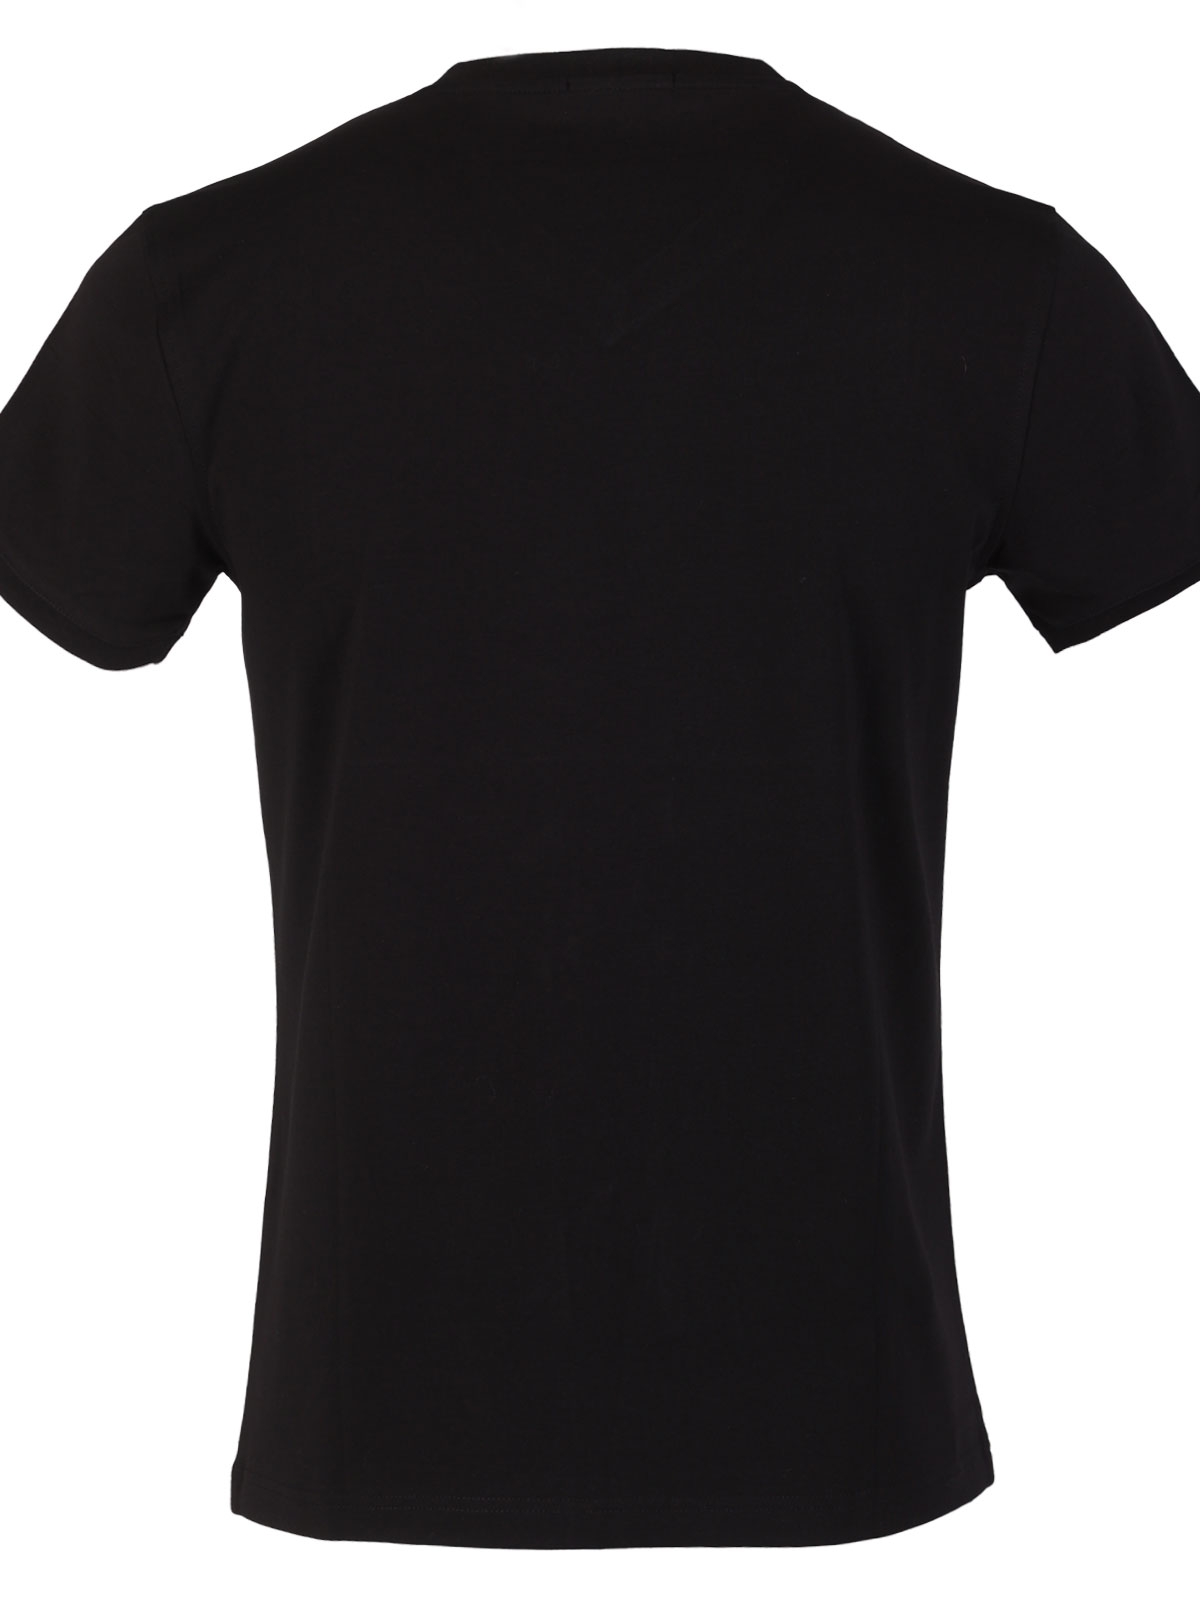 Μαύρο καθαρό μπλουζάκι - 97020 € 20.25 img2